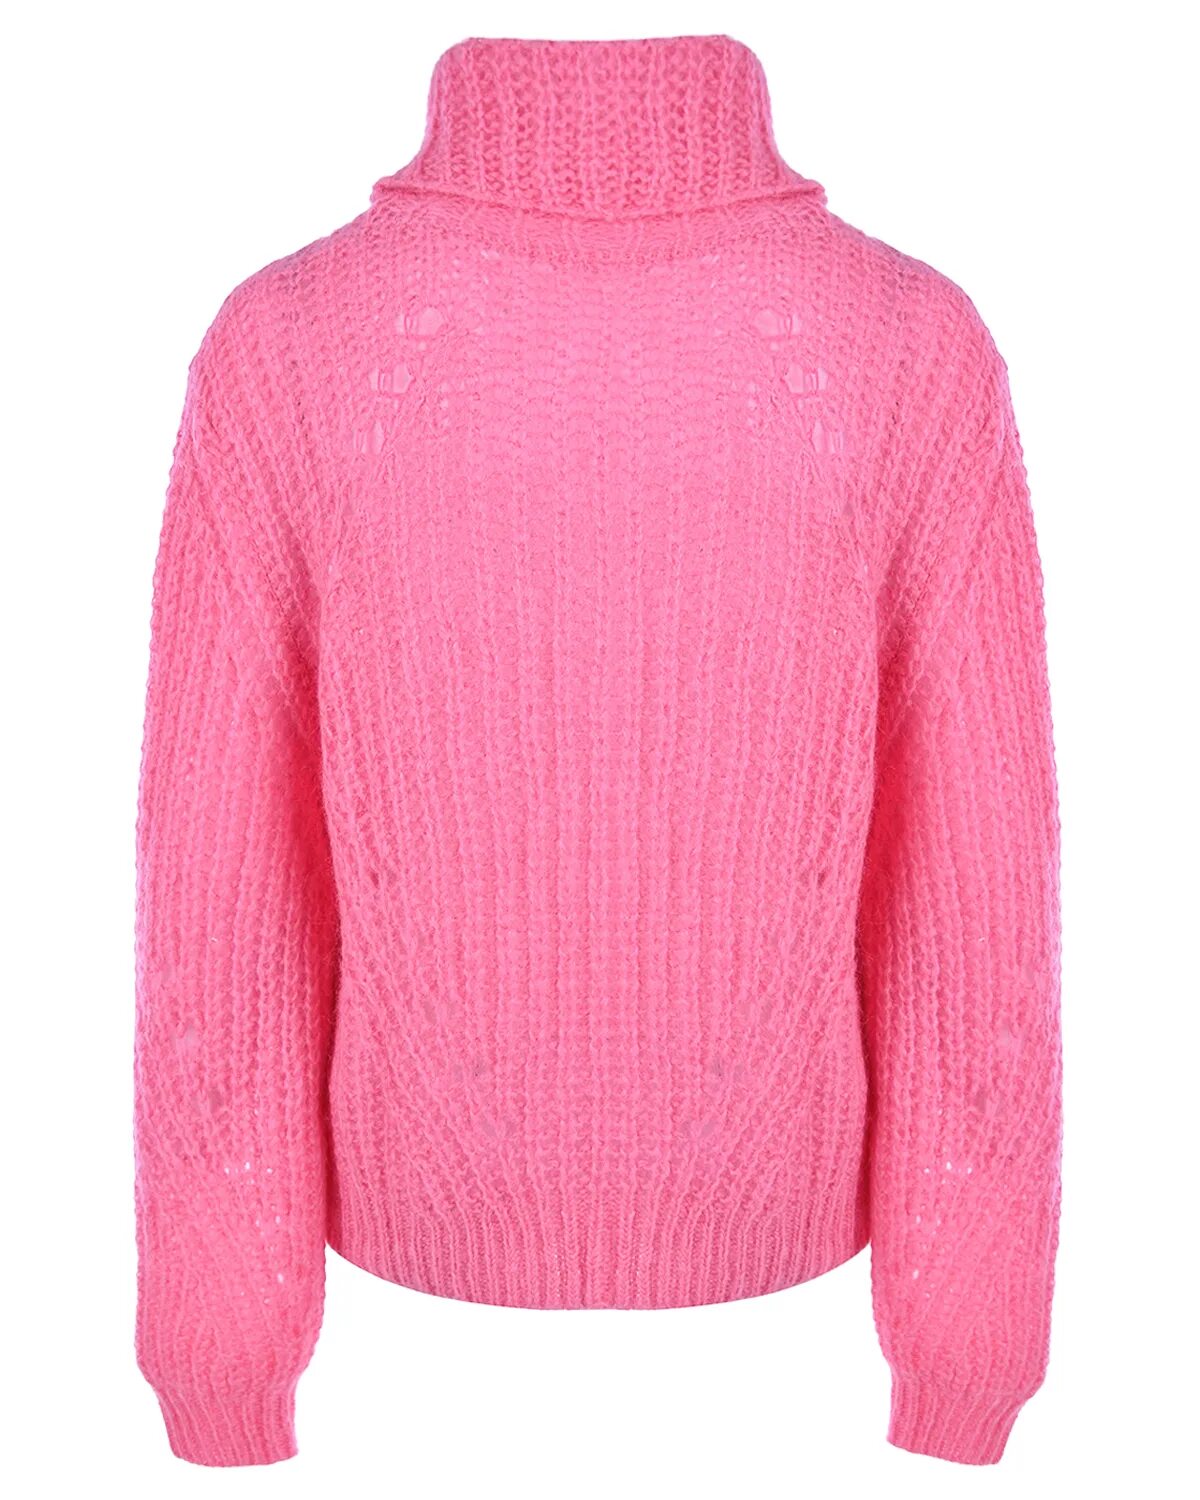 Песни розовый свитер. Джемпер розовый. Розовый свитер. Розовый пуловер водолазка.